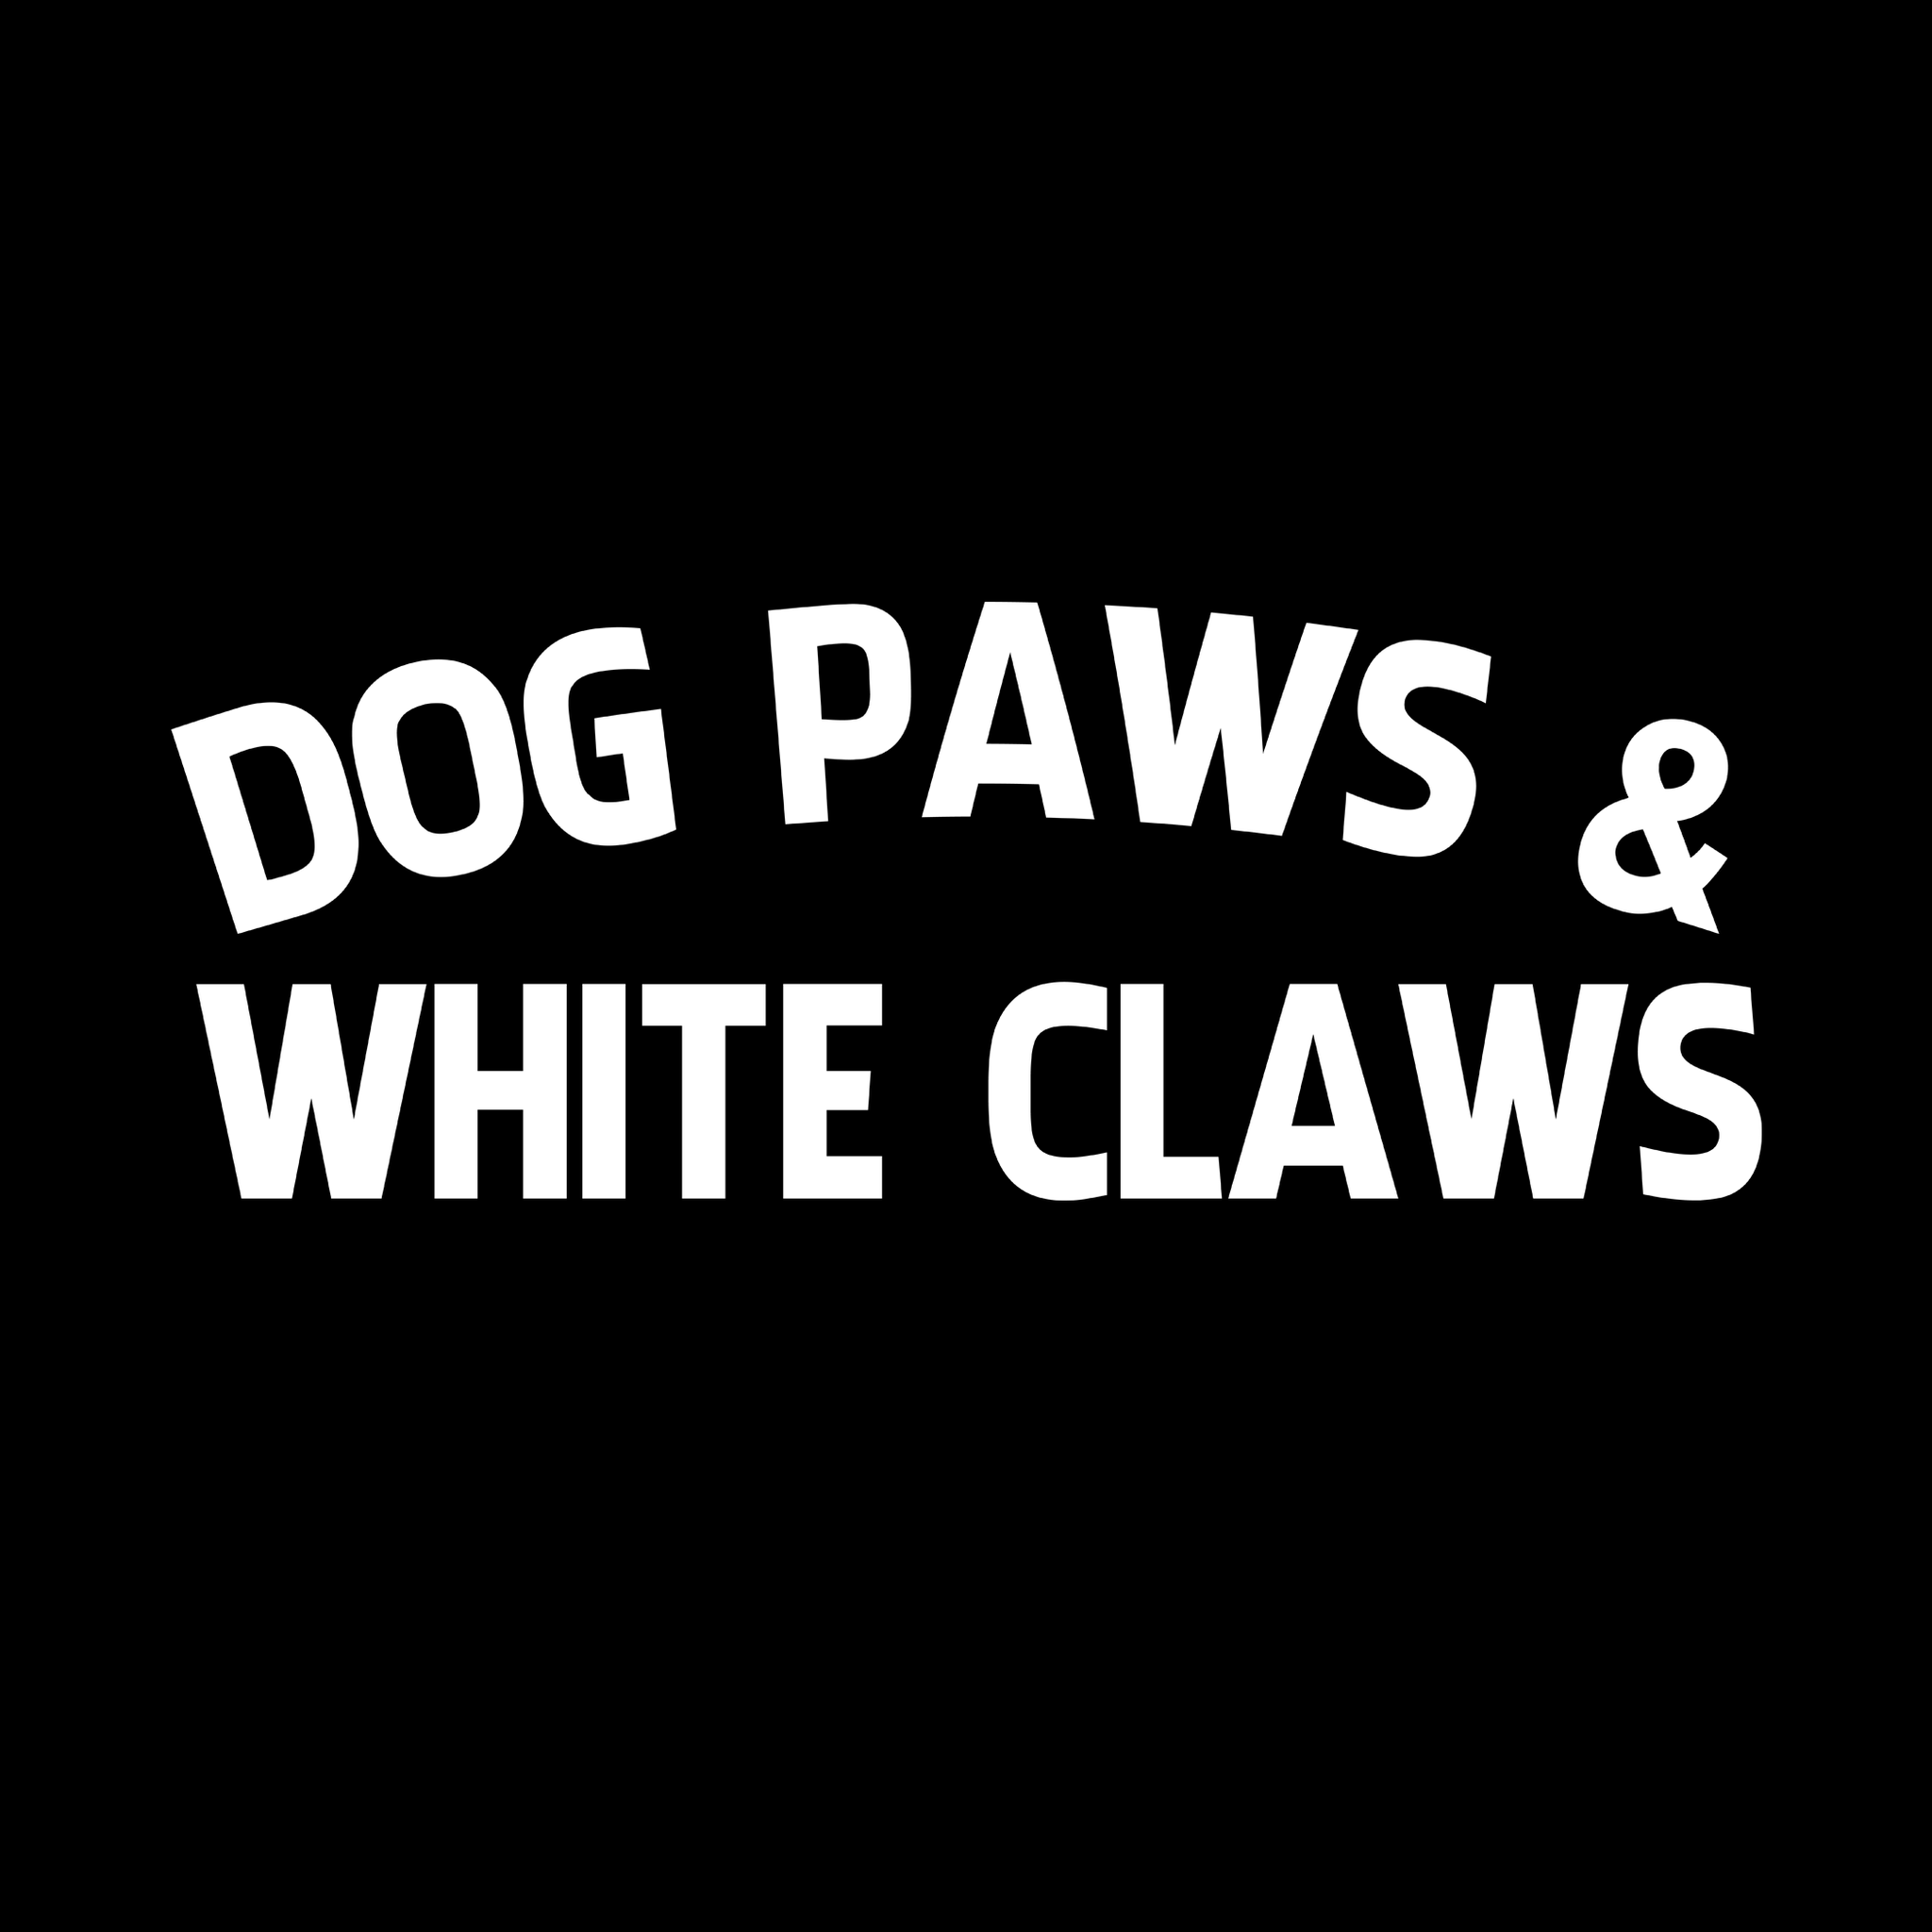 Dog paws & white claws svg, Dog paws & white claws, Dog paws & white claws design, Dog svg, png, eps, dxf file